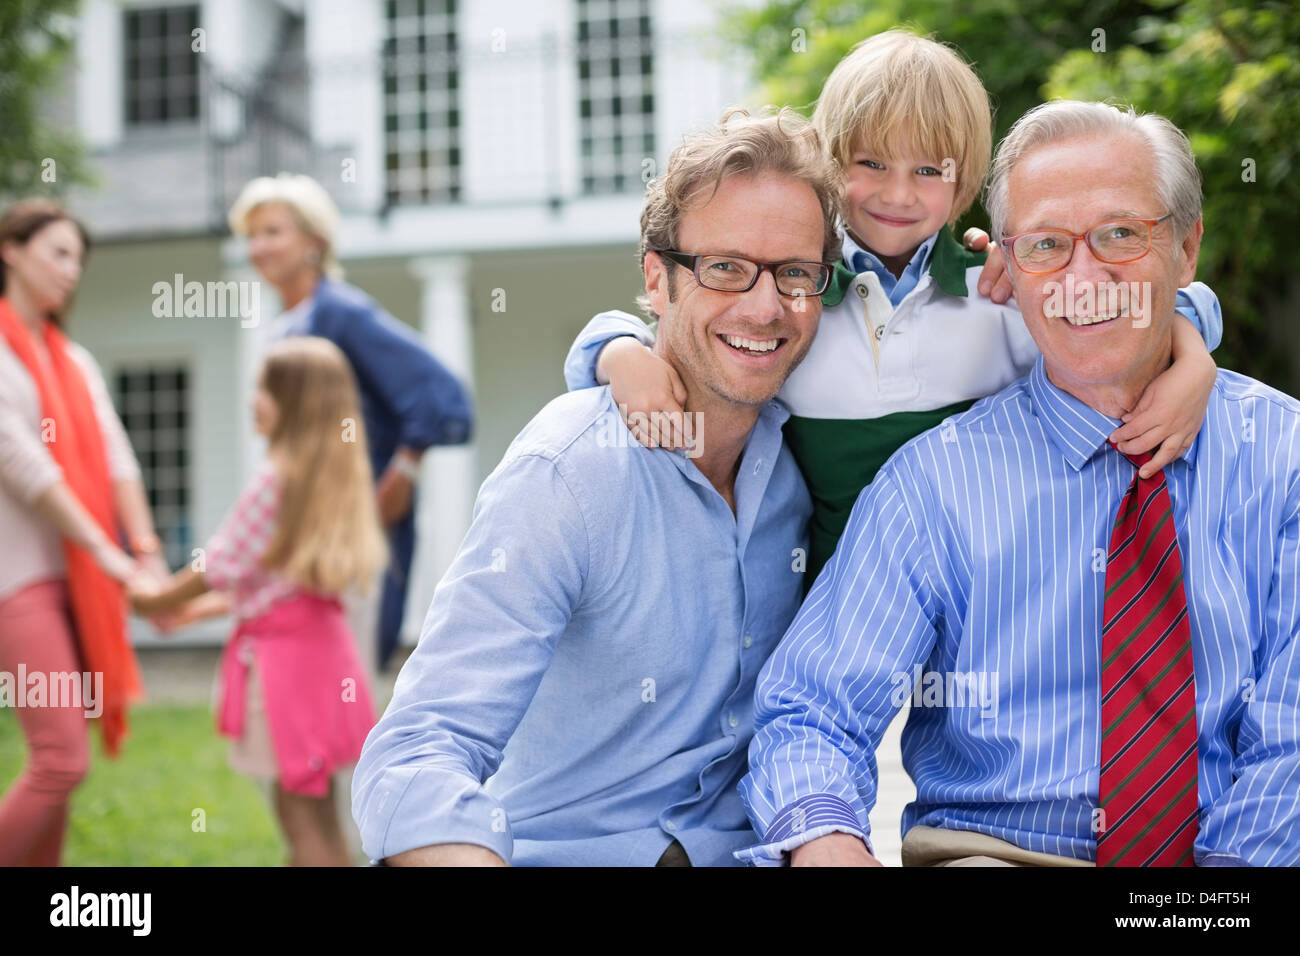 Trois générations d'hommes smiling together Banque D'Images